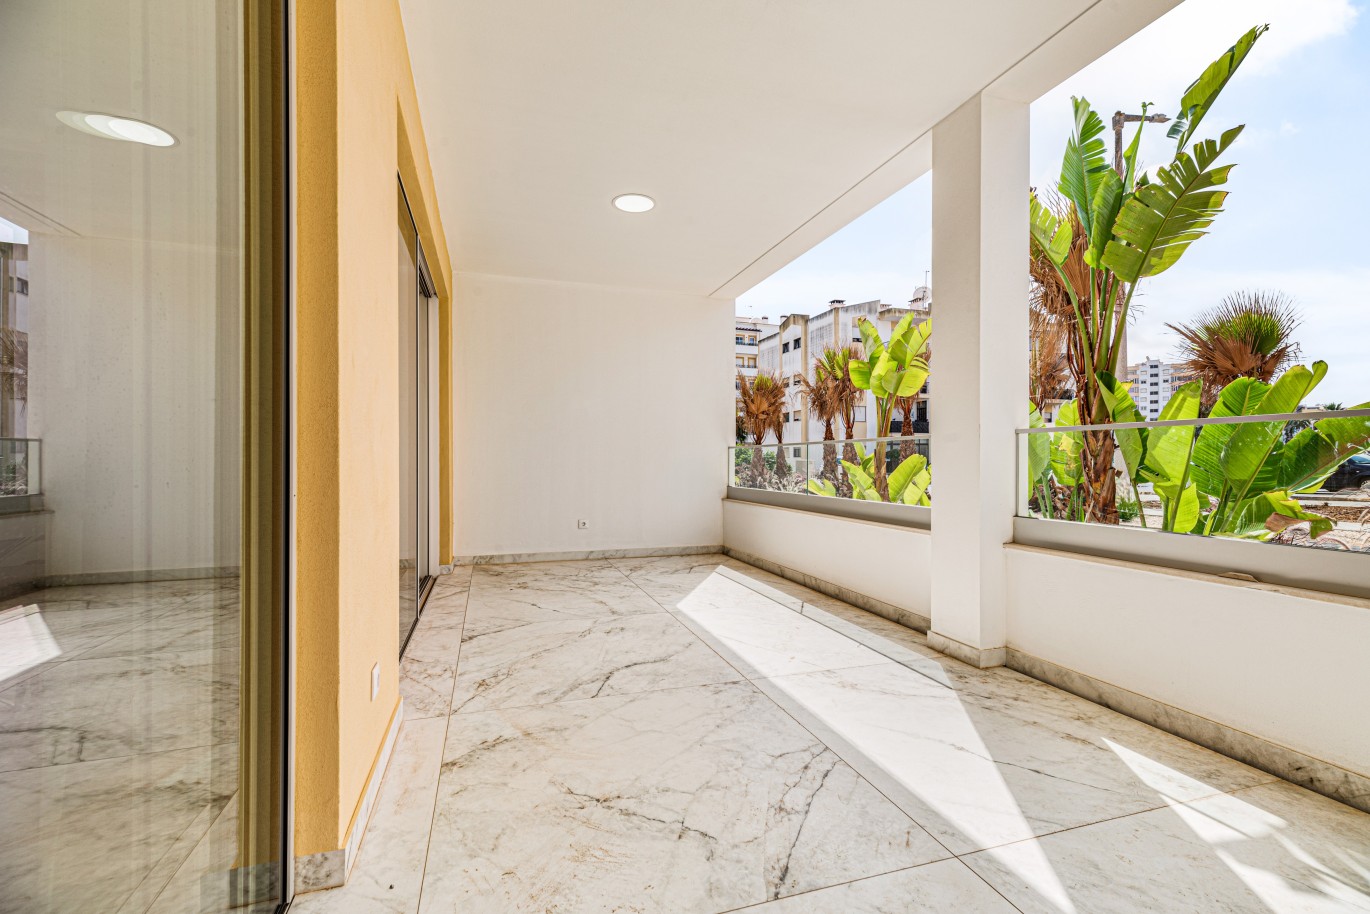 Verkauf einer Wohnung im Bau, mit Terrasse, Lagos, Algarve, Portugal_238135